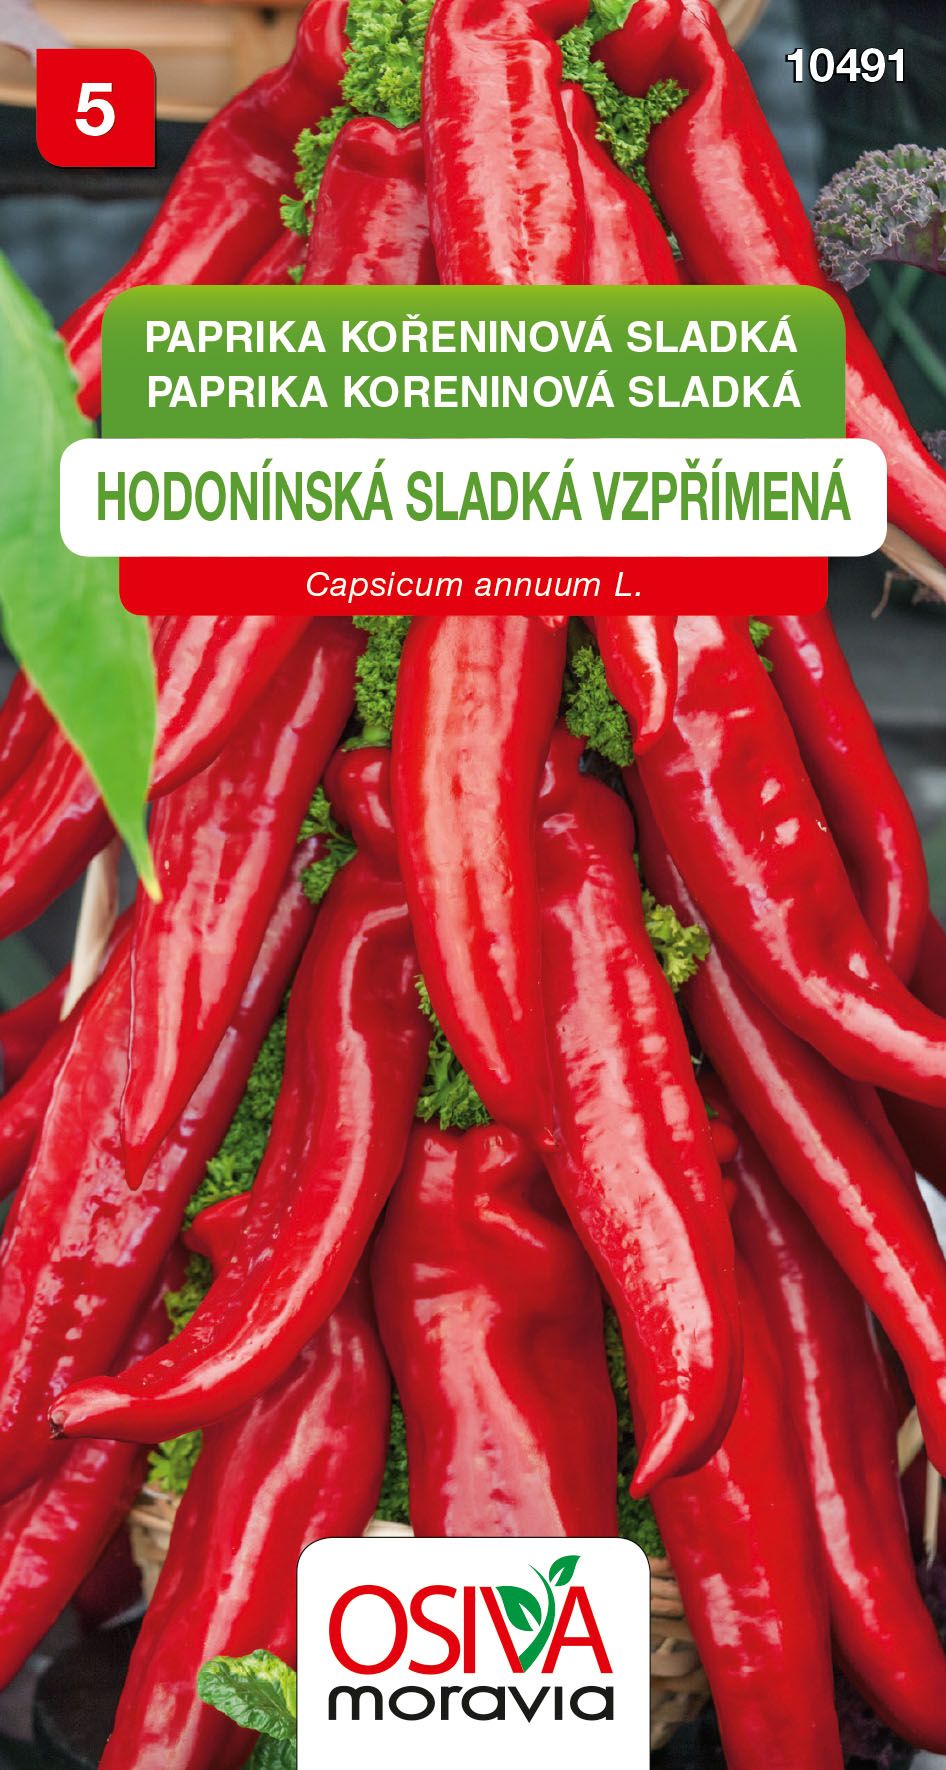 Paprika zeleninová - kořeninová - Hodonínská sladká